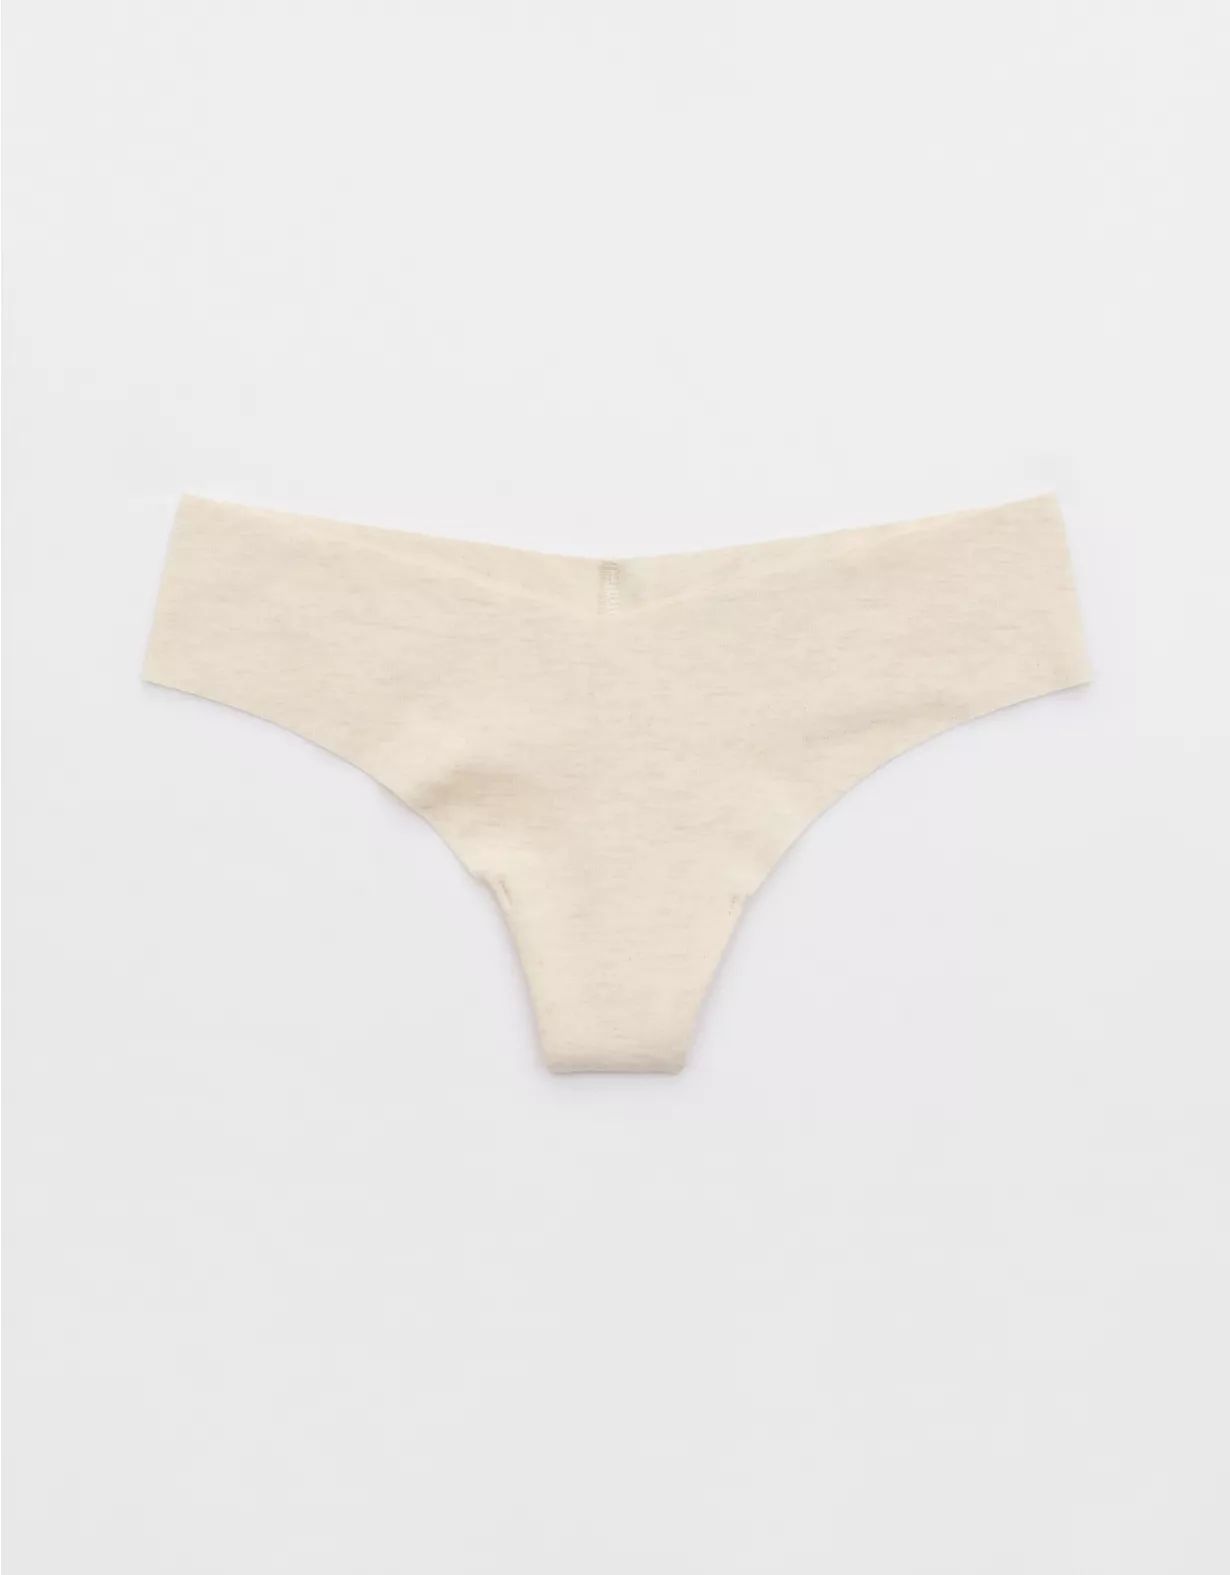 Superchill No Show Cotton Thong Underwear | Aerie